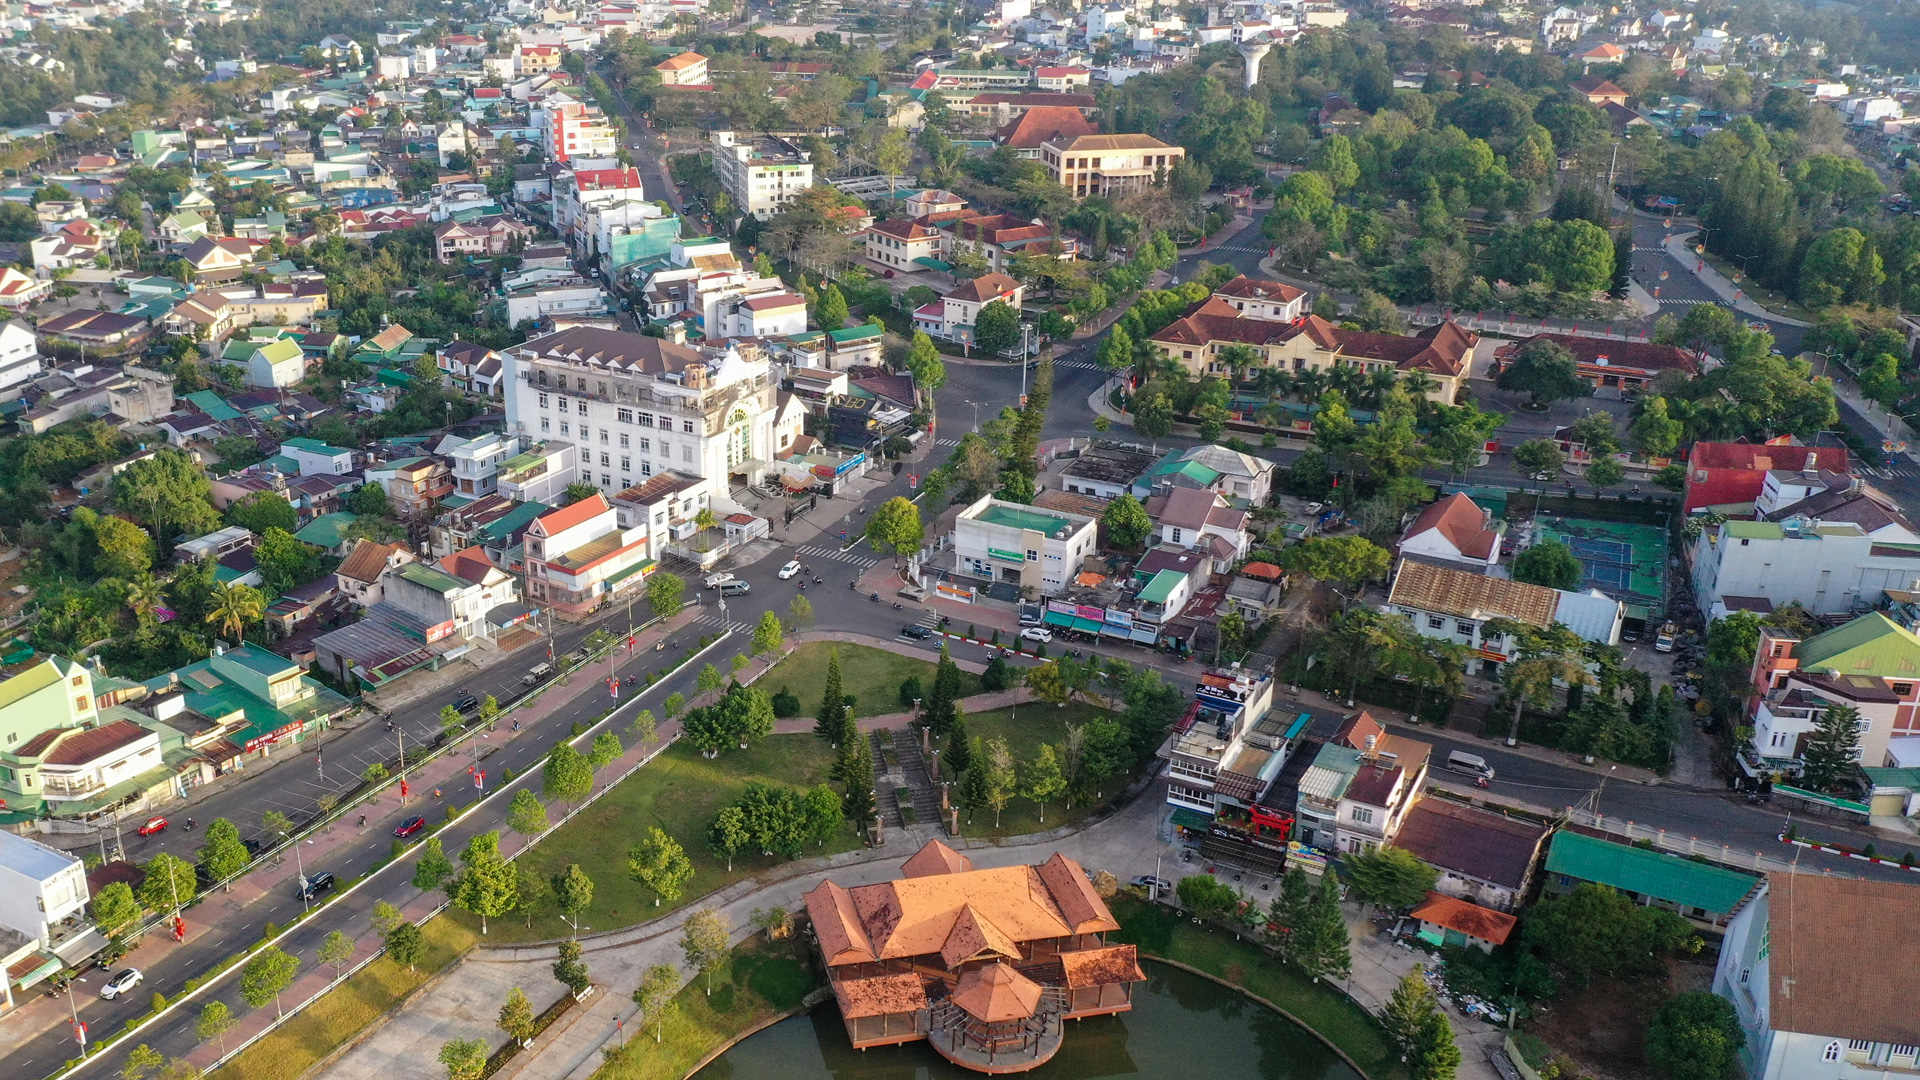 Quy hoạch để phát triển bền vững đô thị Bảo Lộc